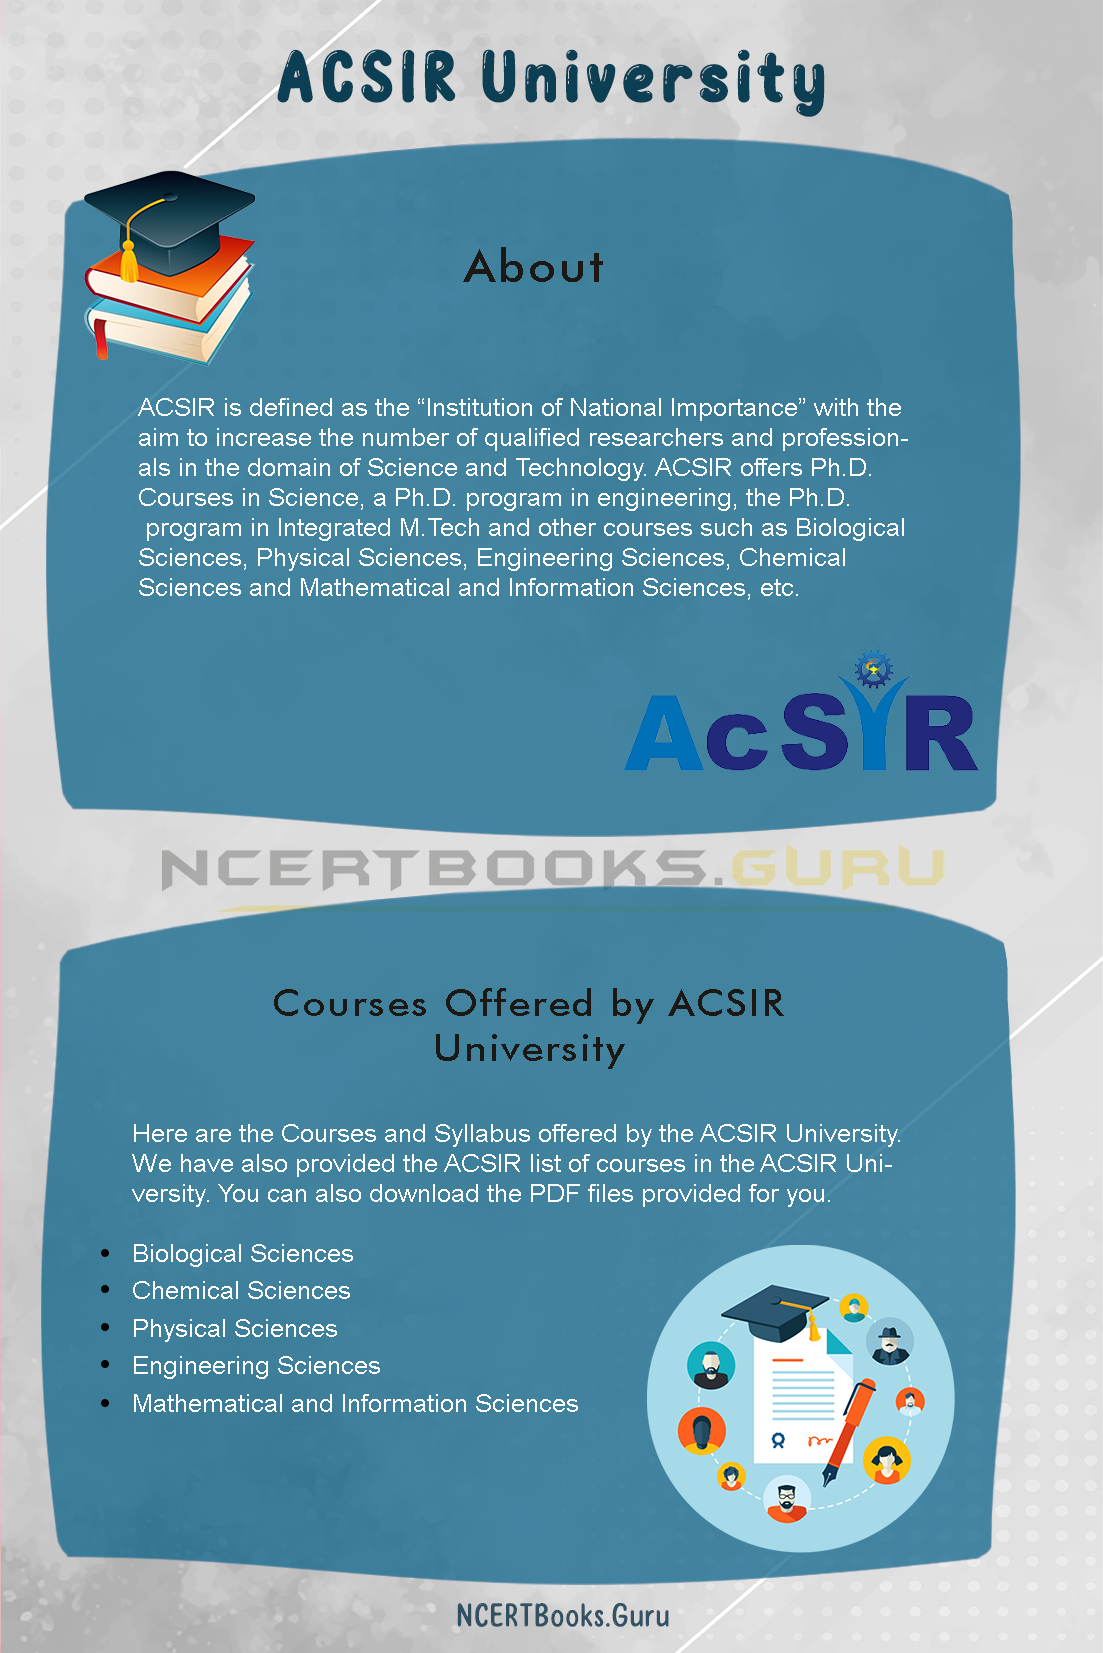 ACSIR University Courses And Syllabus